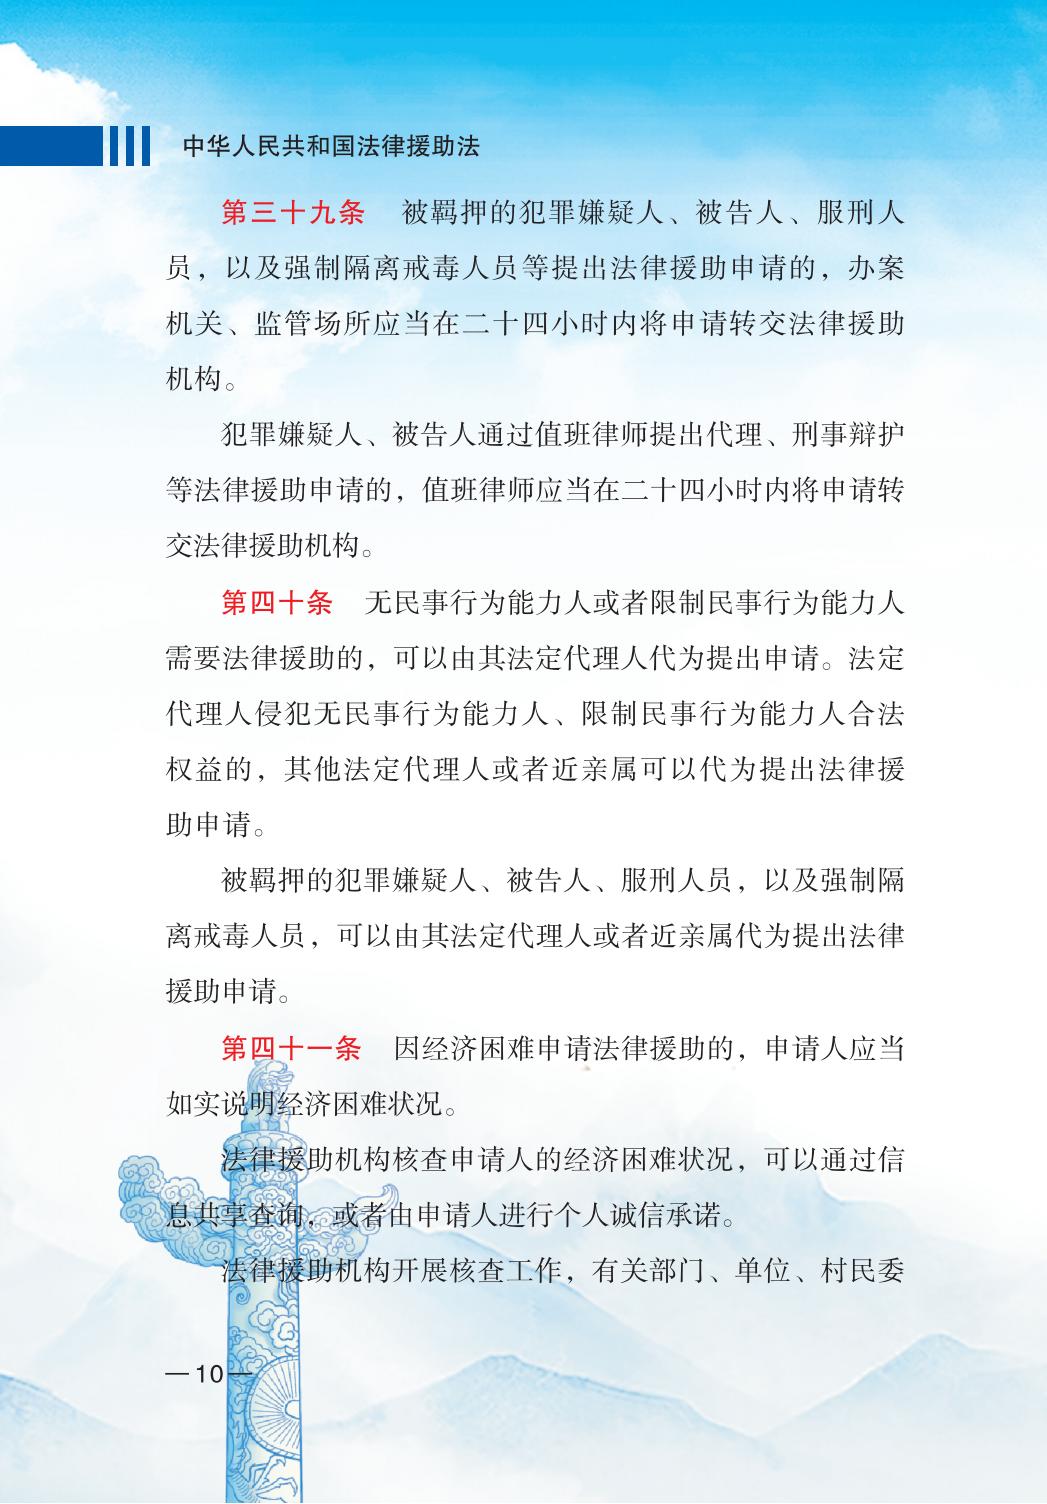 中华人民共和国法律援助法_12.jpg